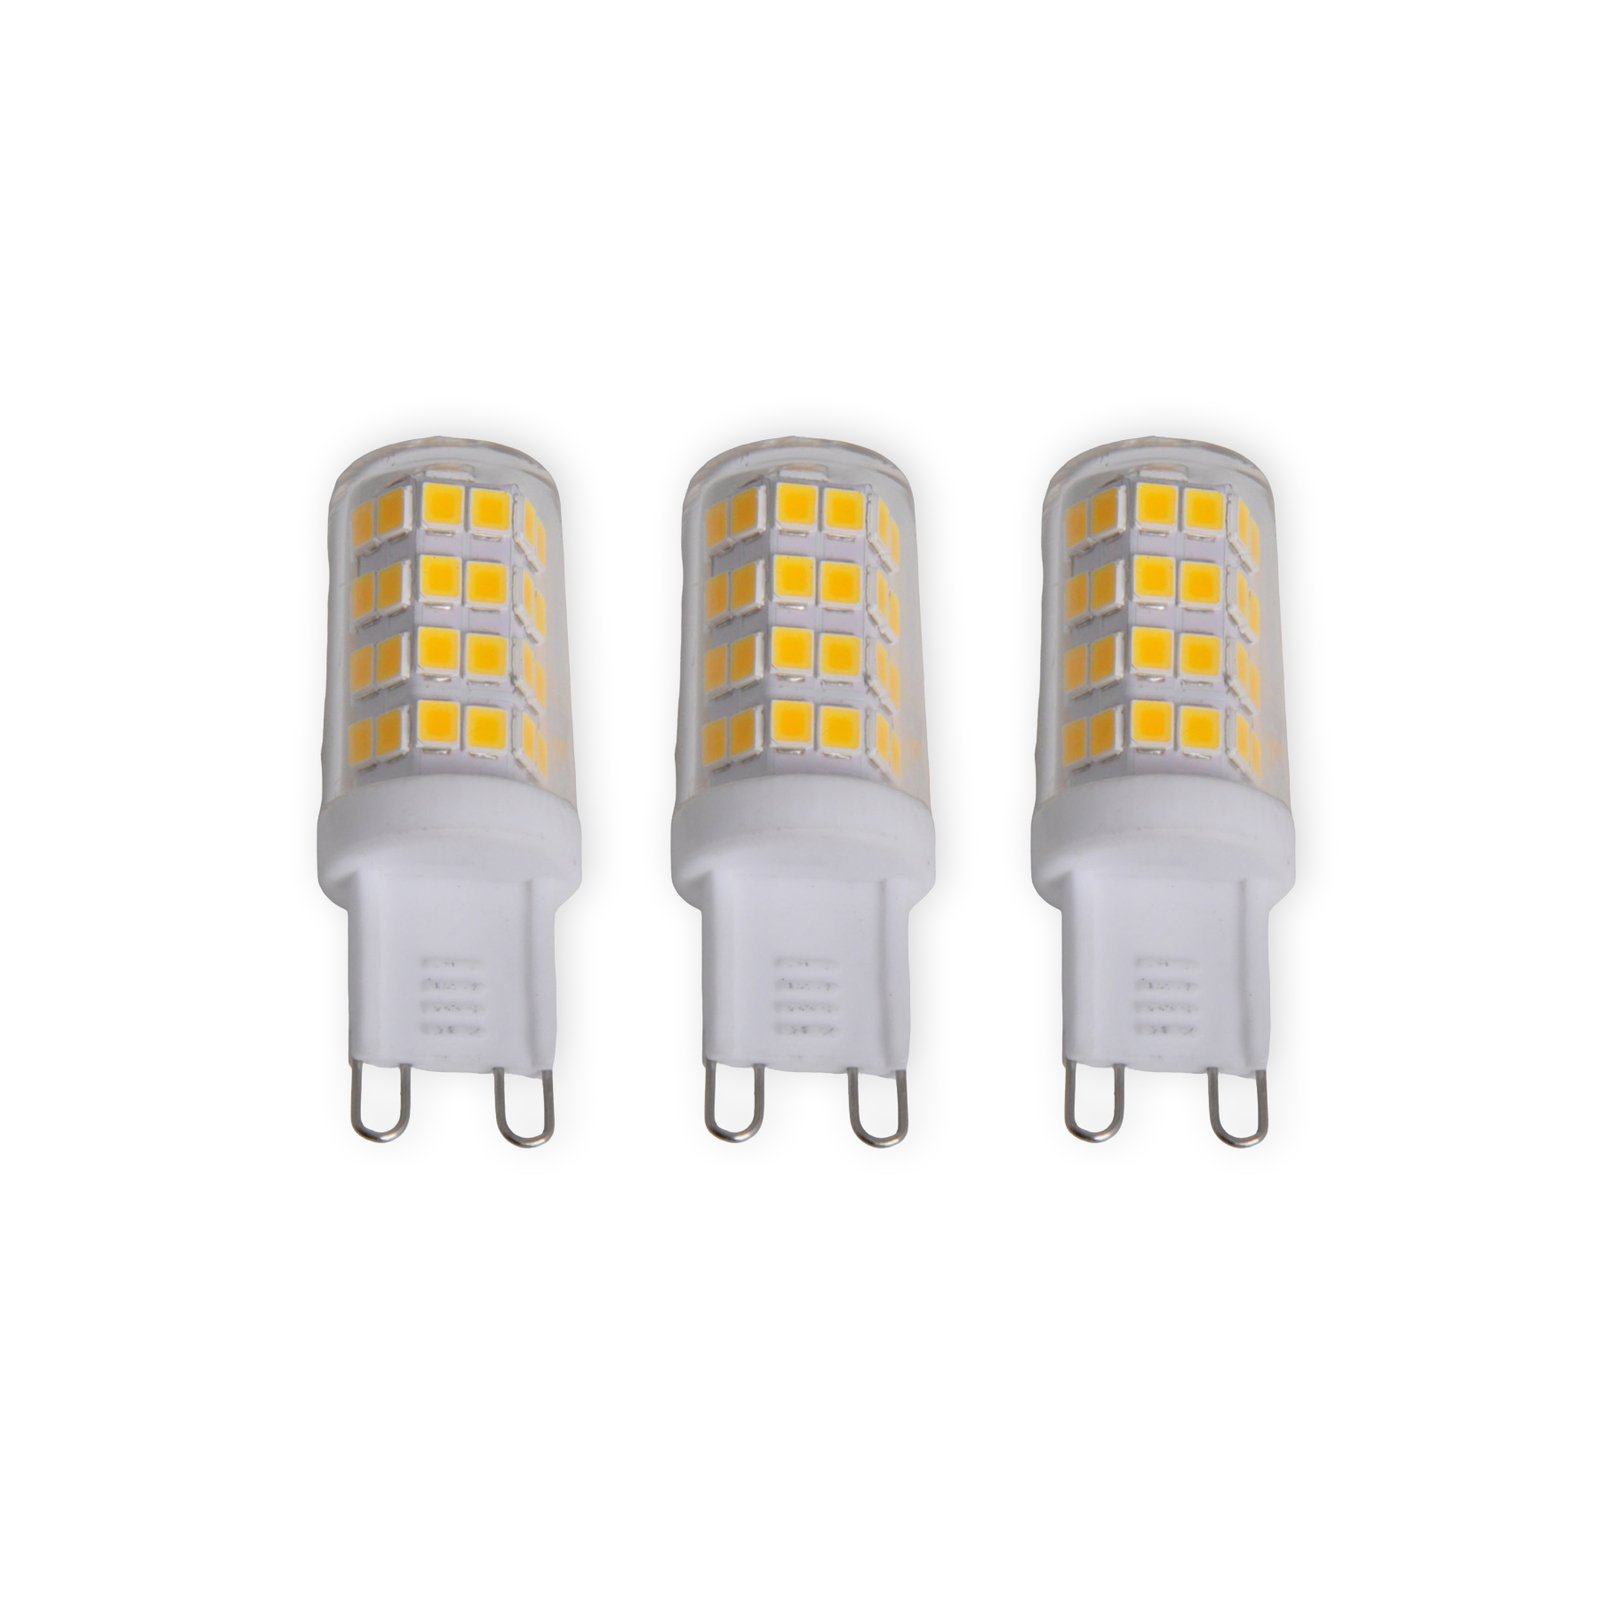 LED-stiftlampa G9 3W, varmvit, 330 lumen, 3-pack